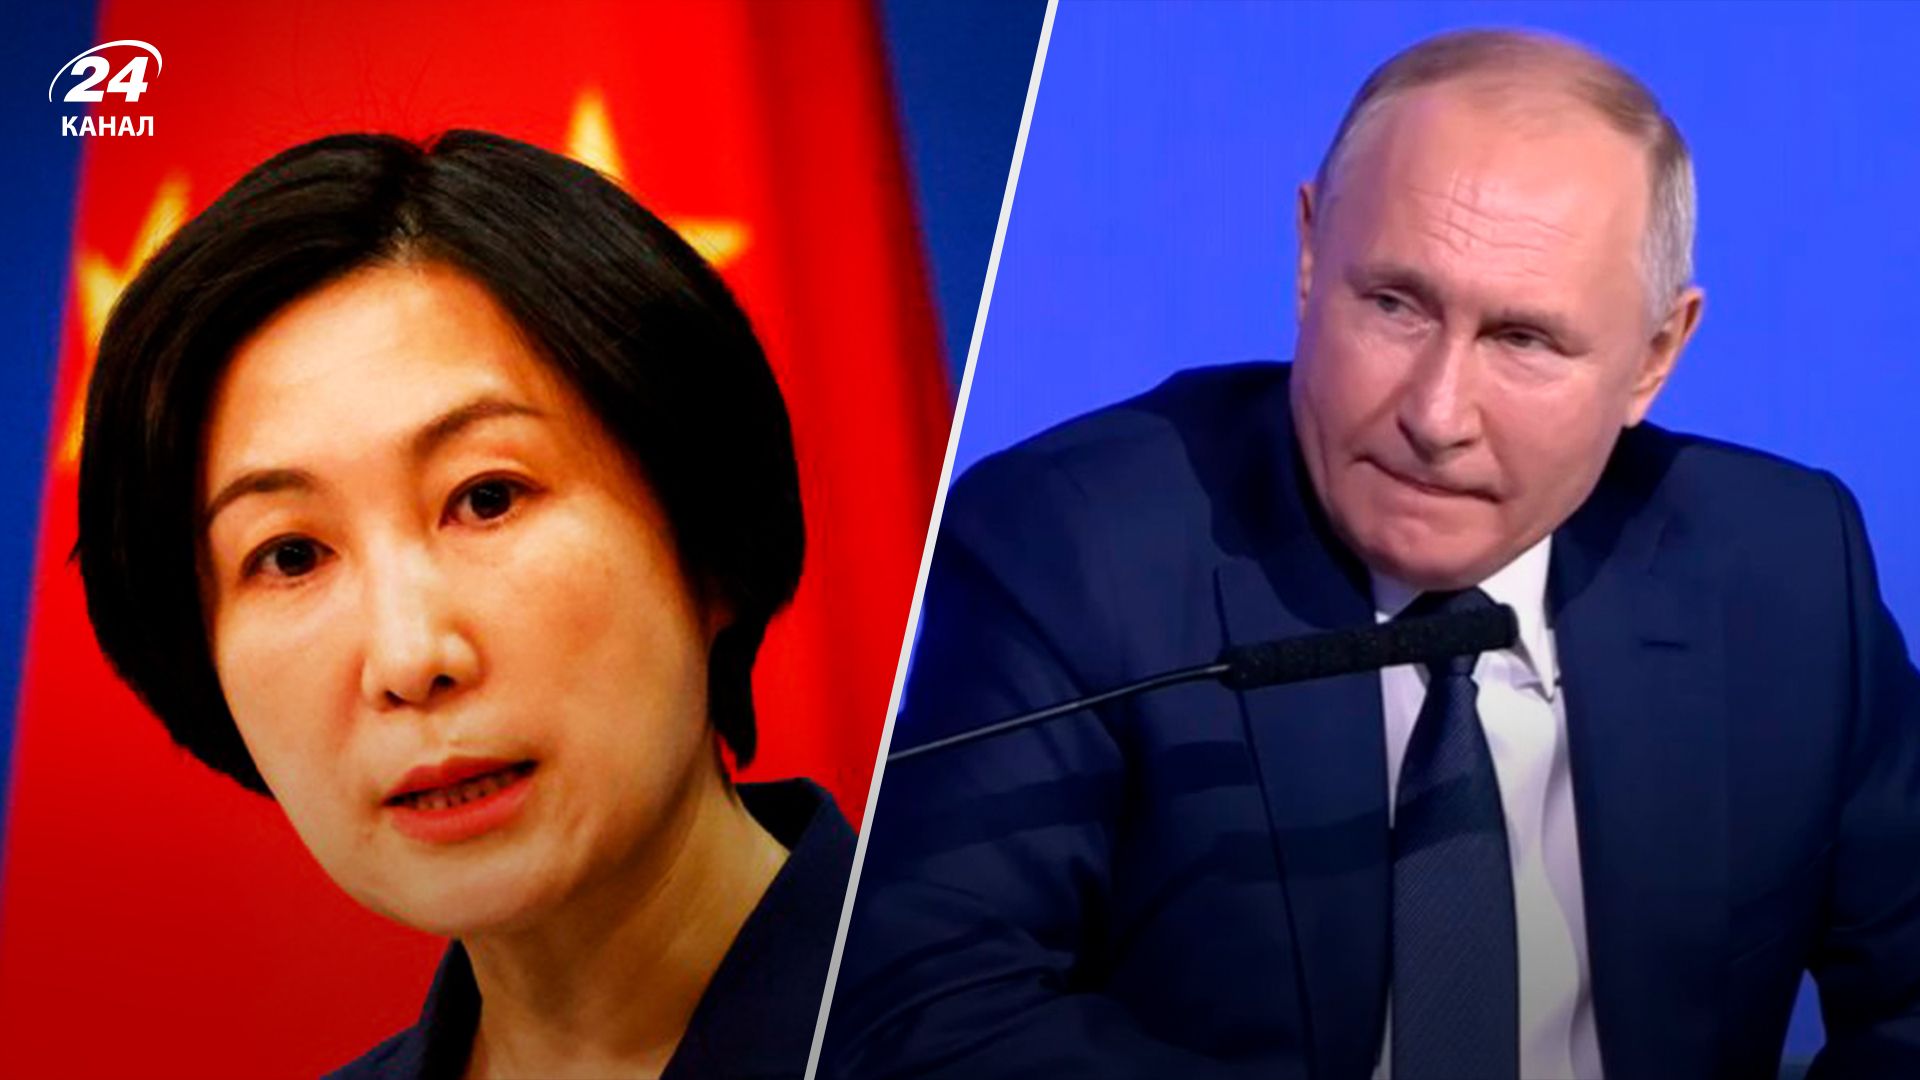 Китай отреагировал на ядерные угрозы Путина